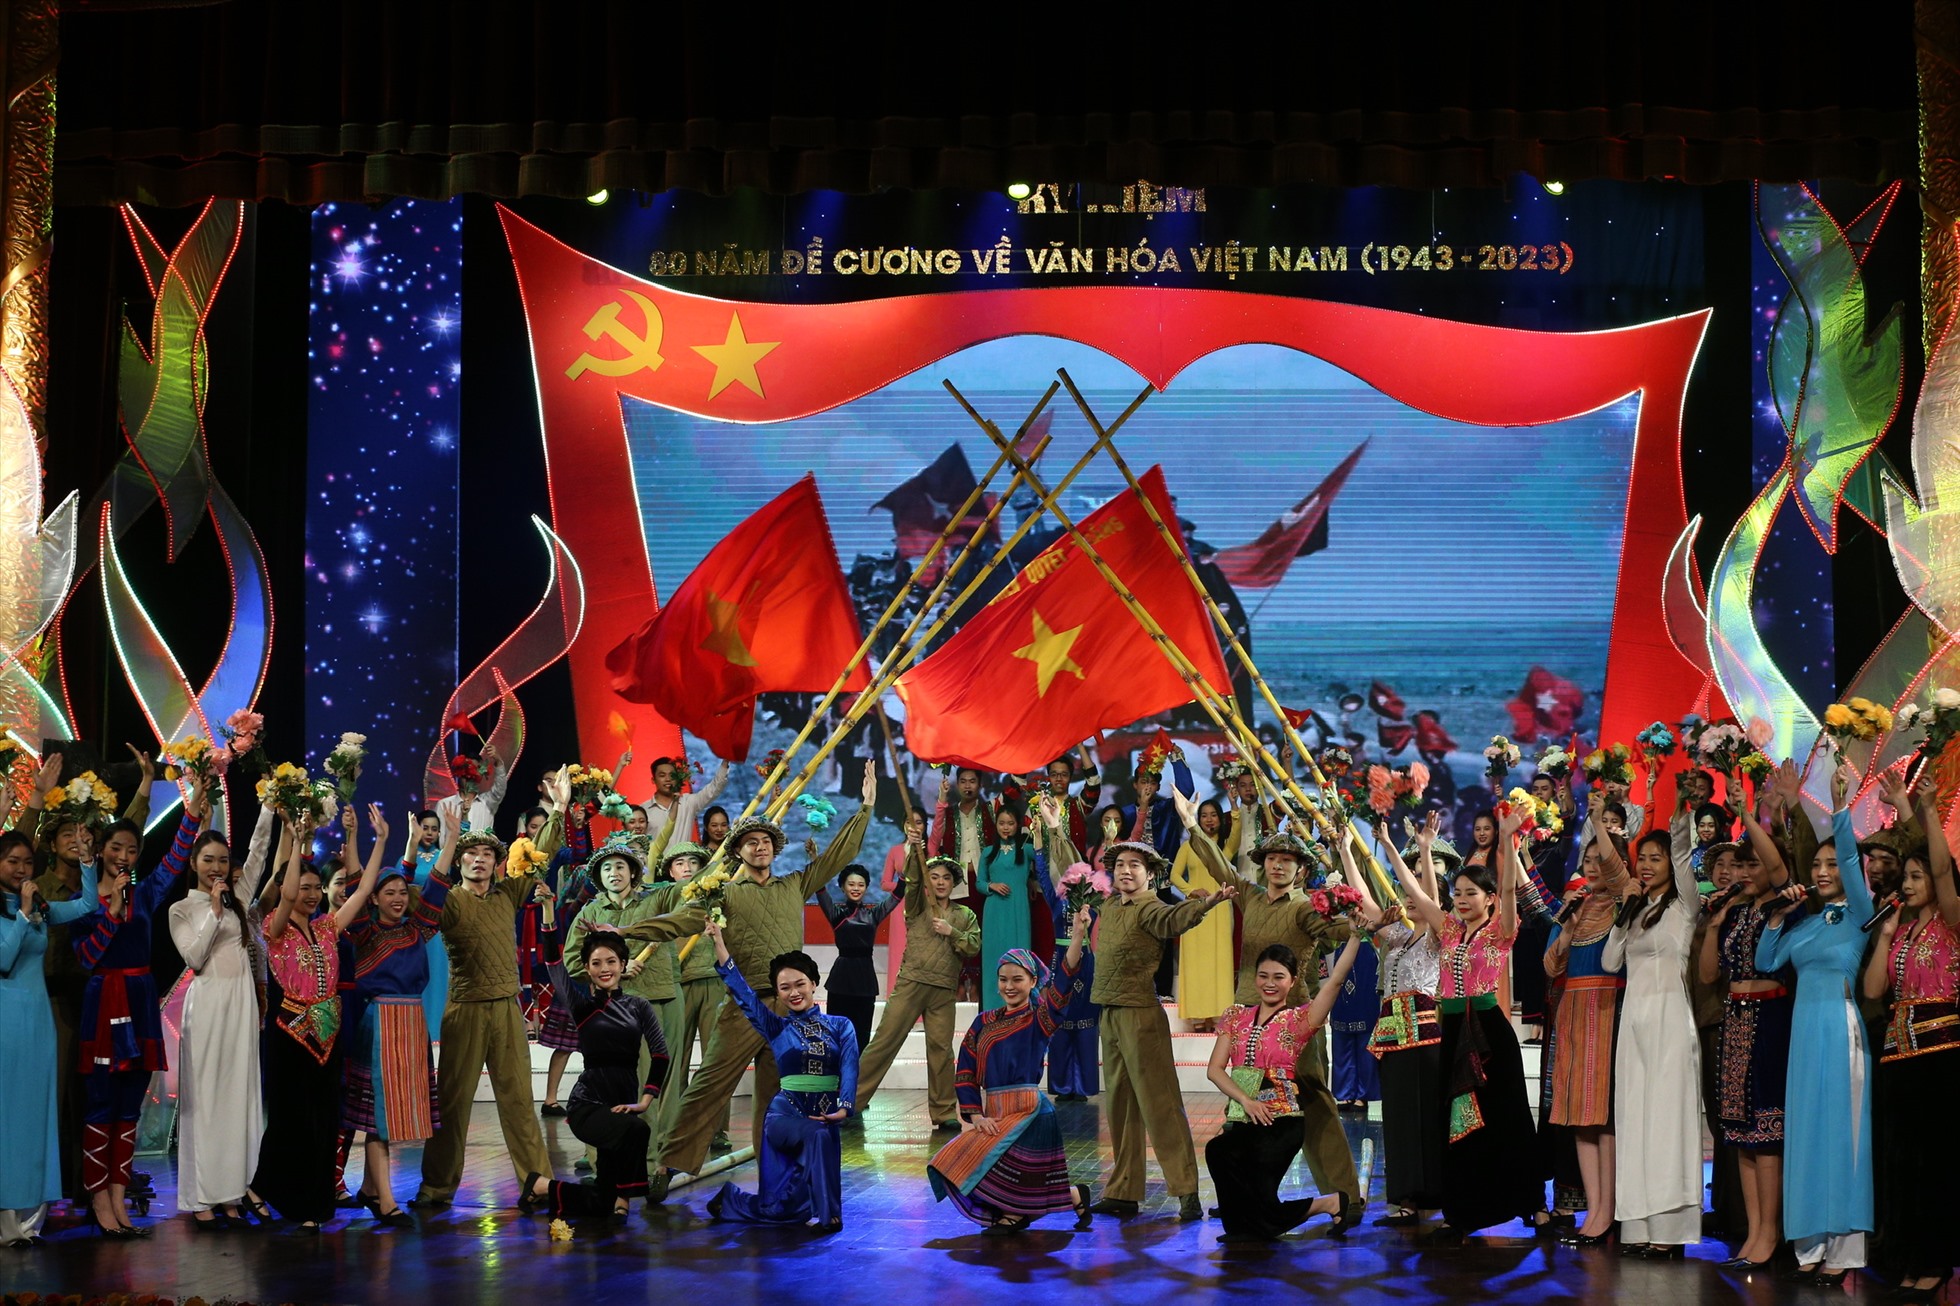 Chương trình do Bộ Văn hóa, Thể thao và Du lịch chủ trì, phối hợp với Ban Tuyên giáo Trung ương, Đài Truyền hình Việt Nam tổ chức nhân kỷ niệm 80 năm ra đời Đề cương về văn hóa Việt Nam (1943-2023).